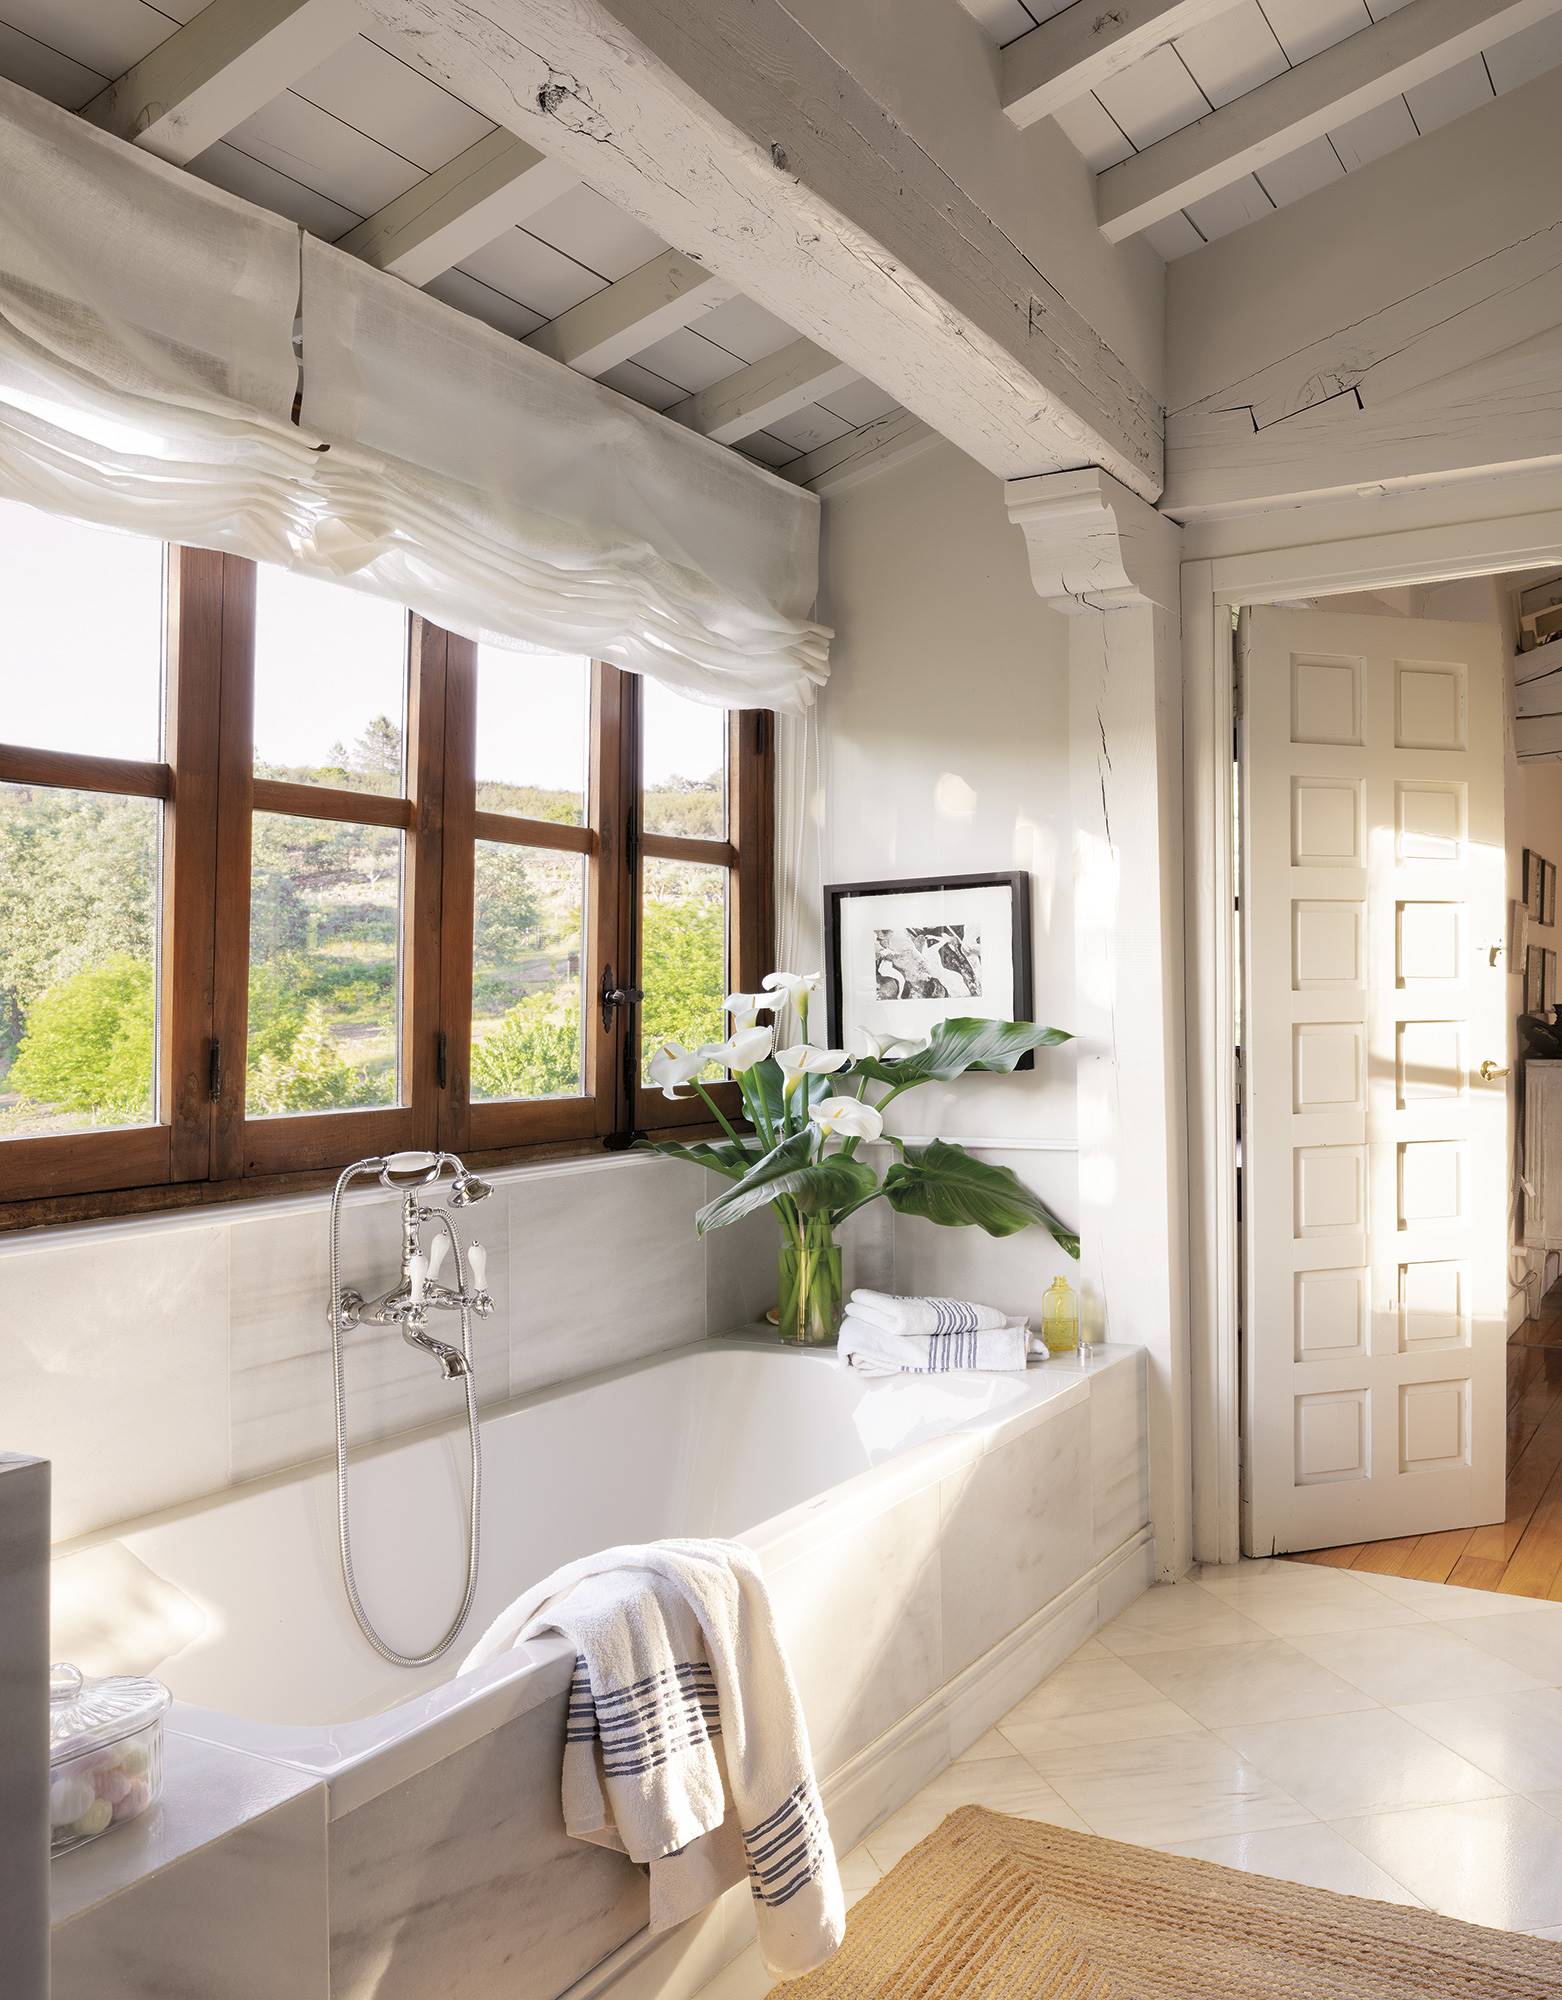 Baño con bañera acrílica bajo la ventana y suelos de mármol.